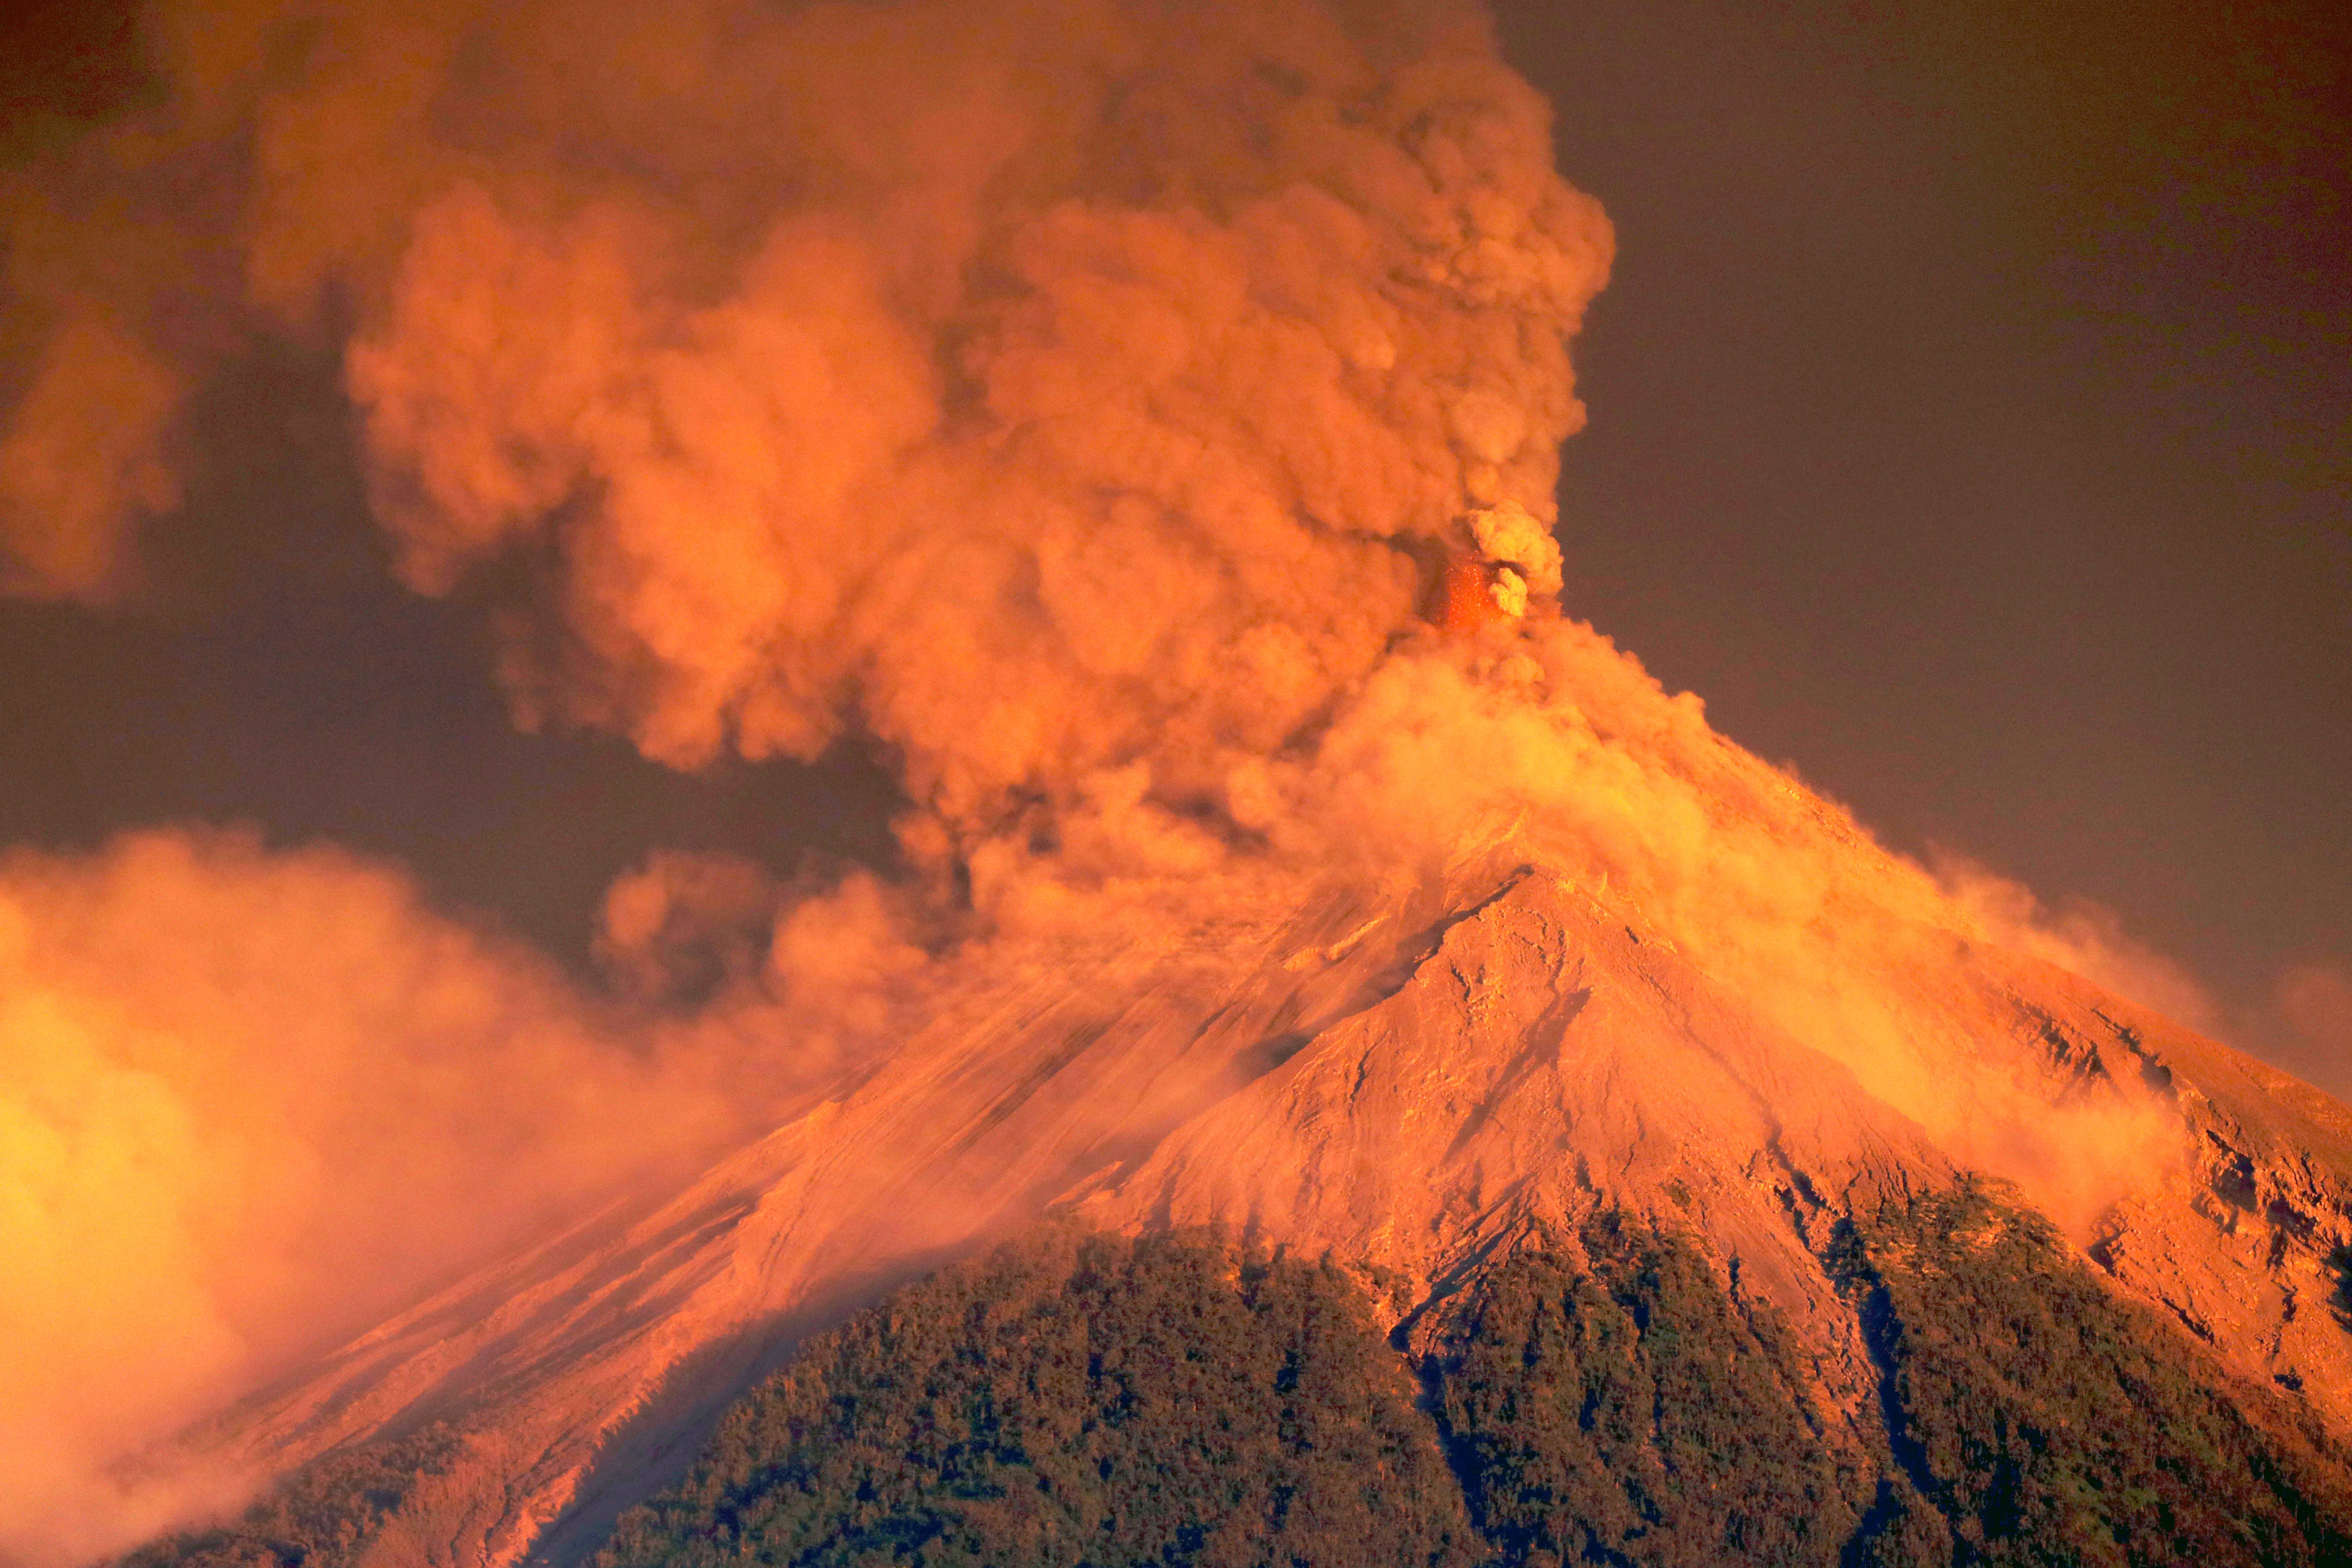 虽然同样是火山爆发,但黄石超级火山还不一样,它的爆发对于全球的影响